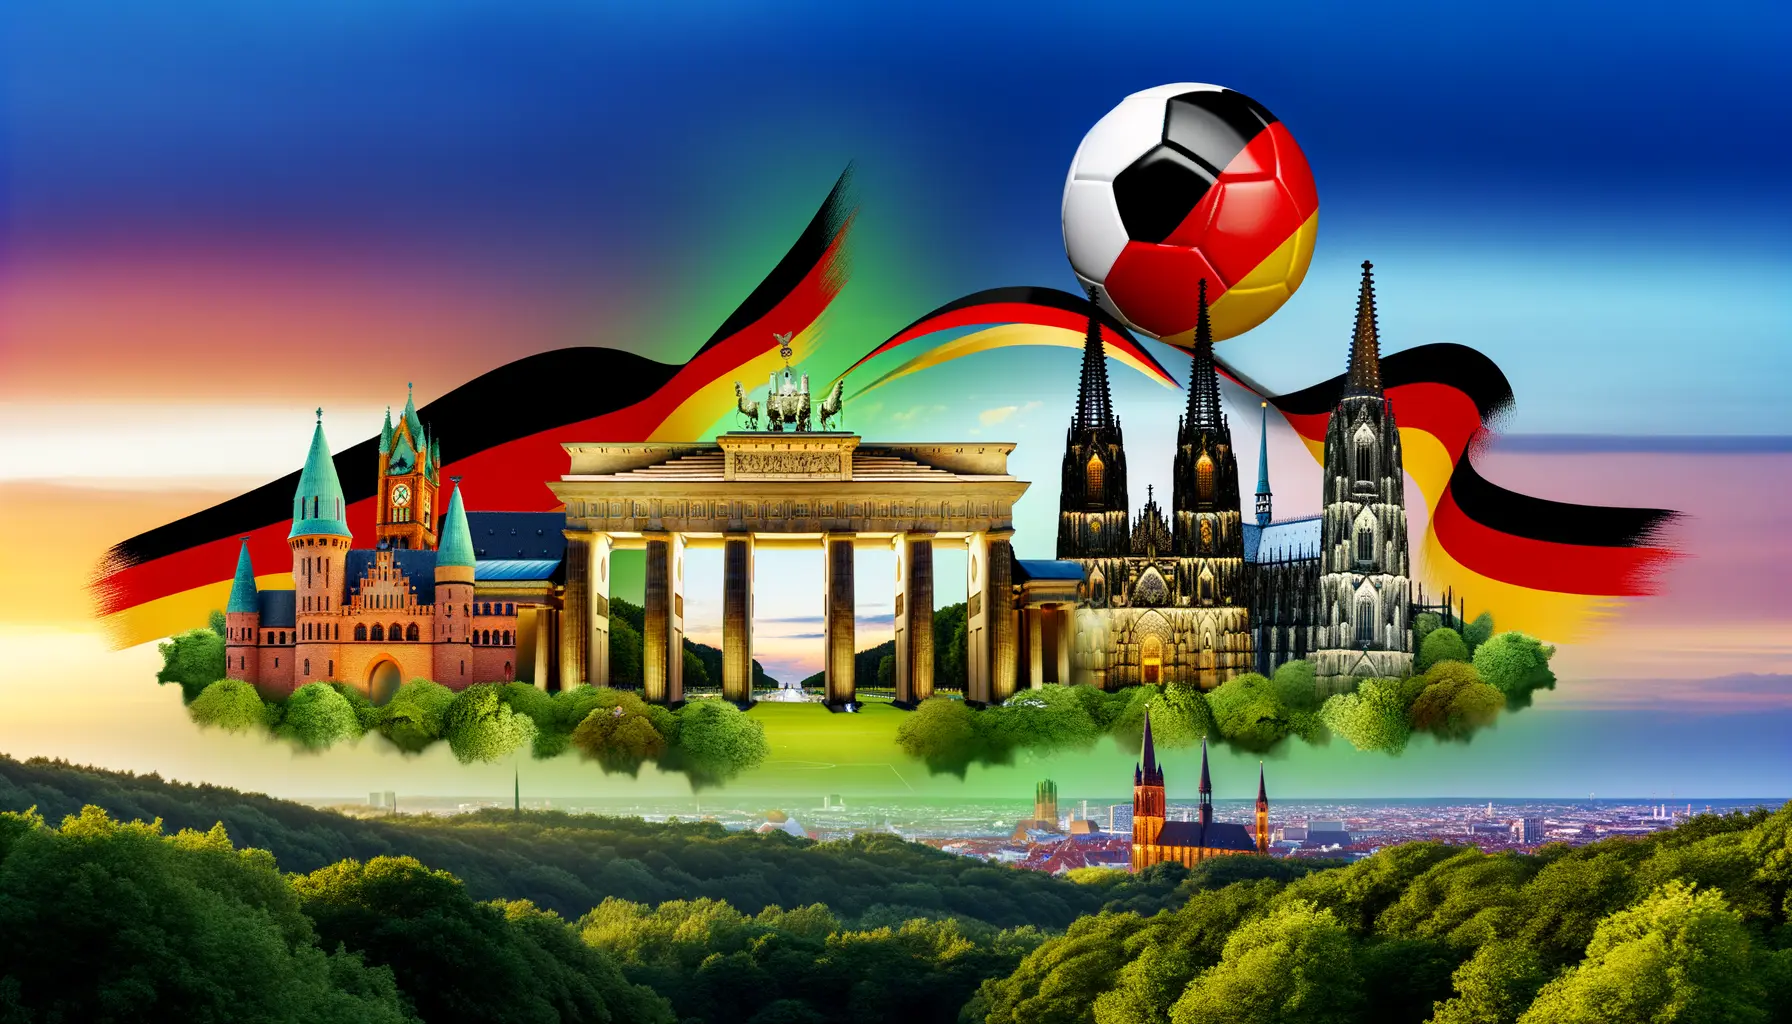 Collage von deutschen Landmarken